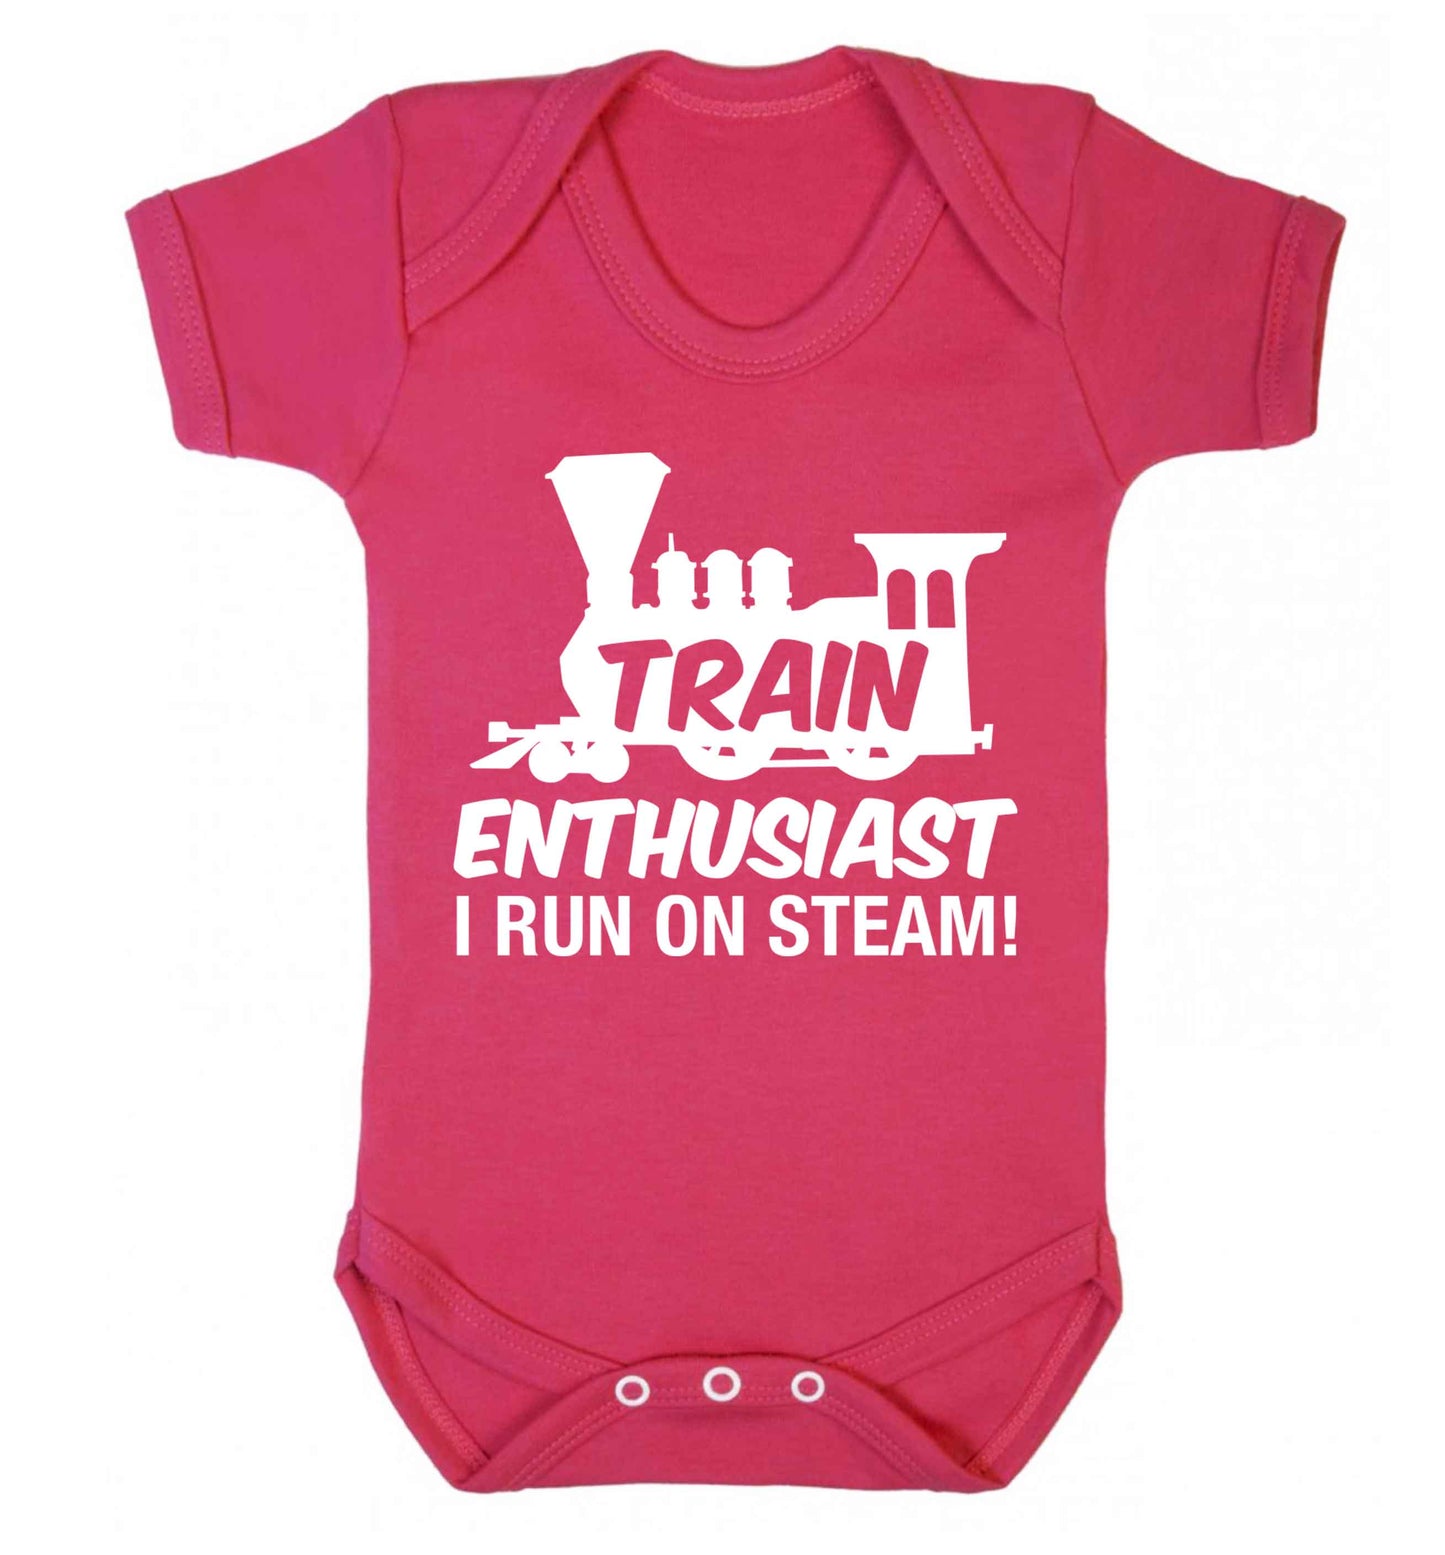 Train enthusiast I run on steam Baby Vest dark pink 18-24 months